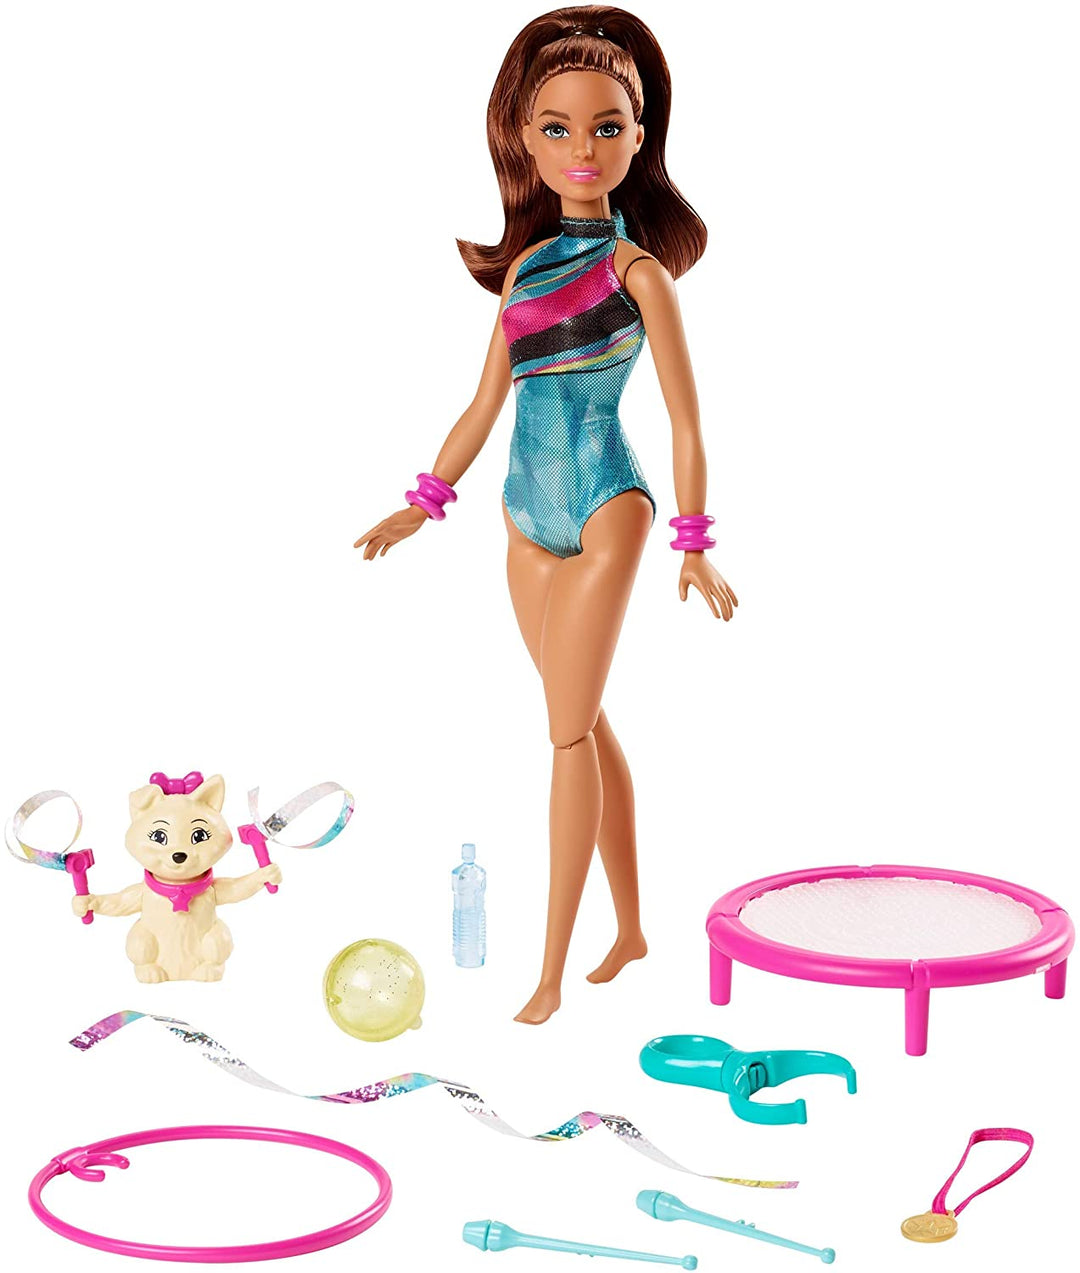 Barbie GHK24 Dreamhouse Adventures Spin 'n Twirl Turnerin Puppe und Zubehör